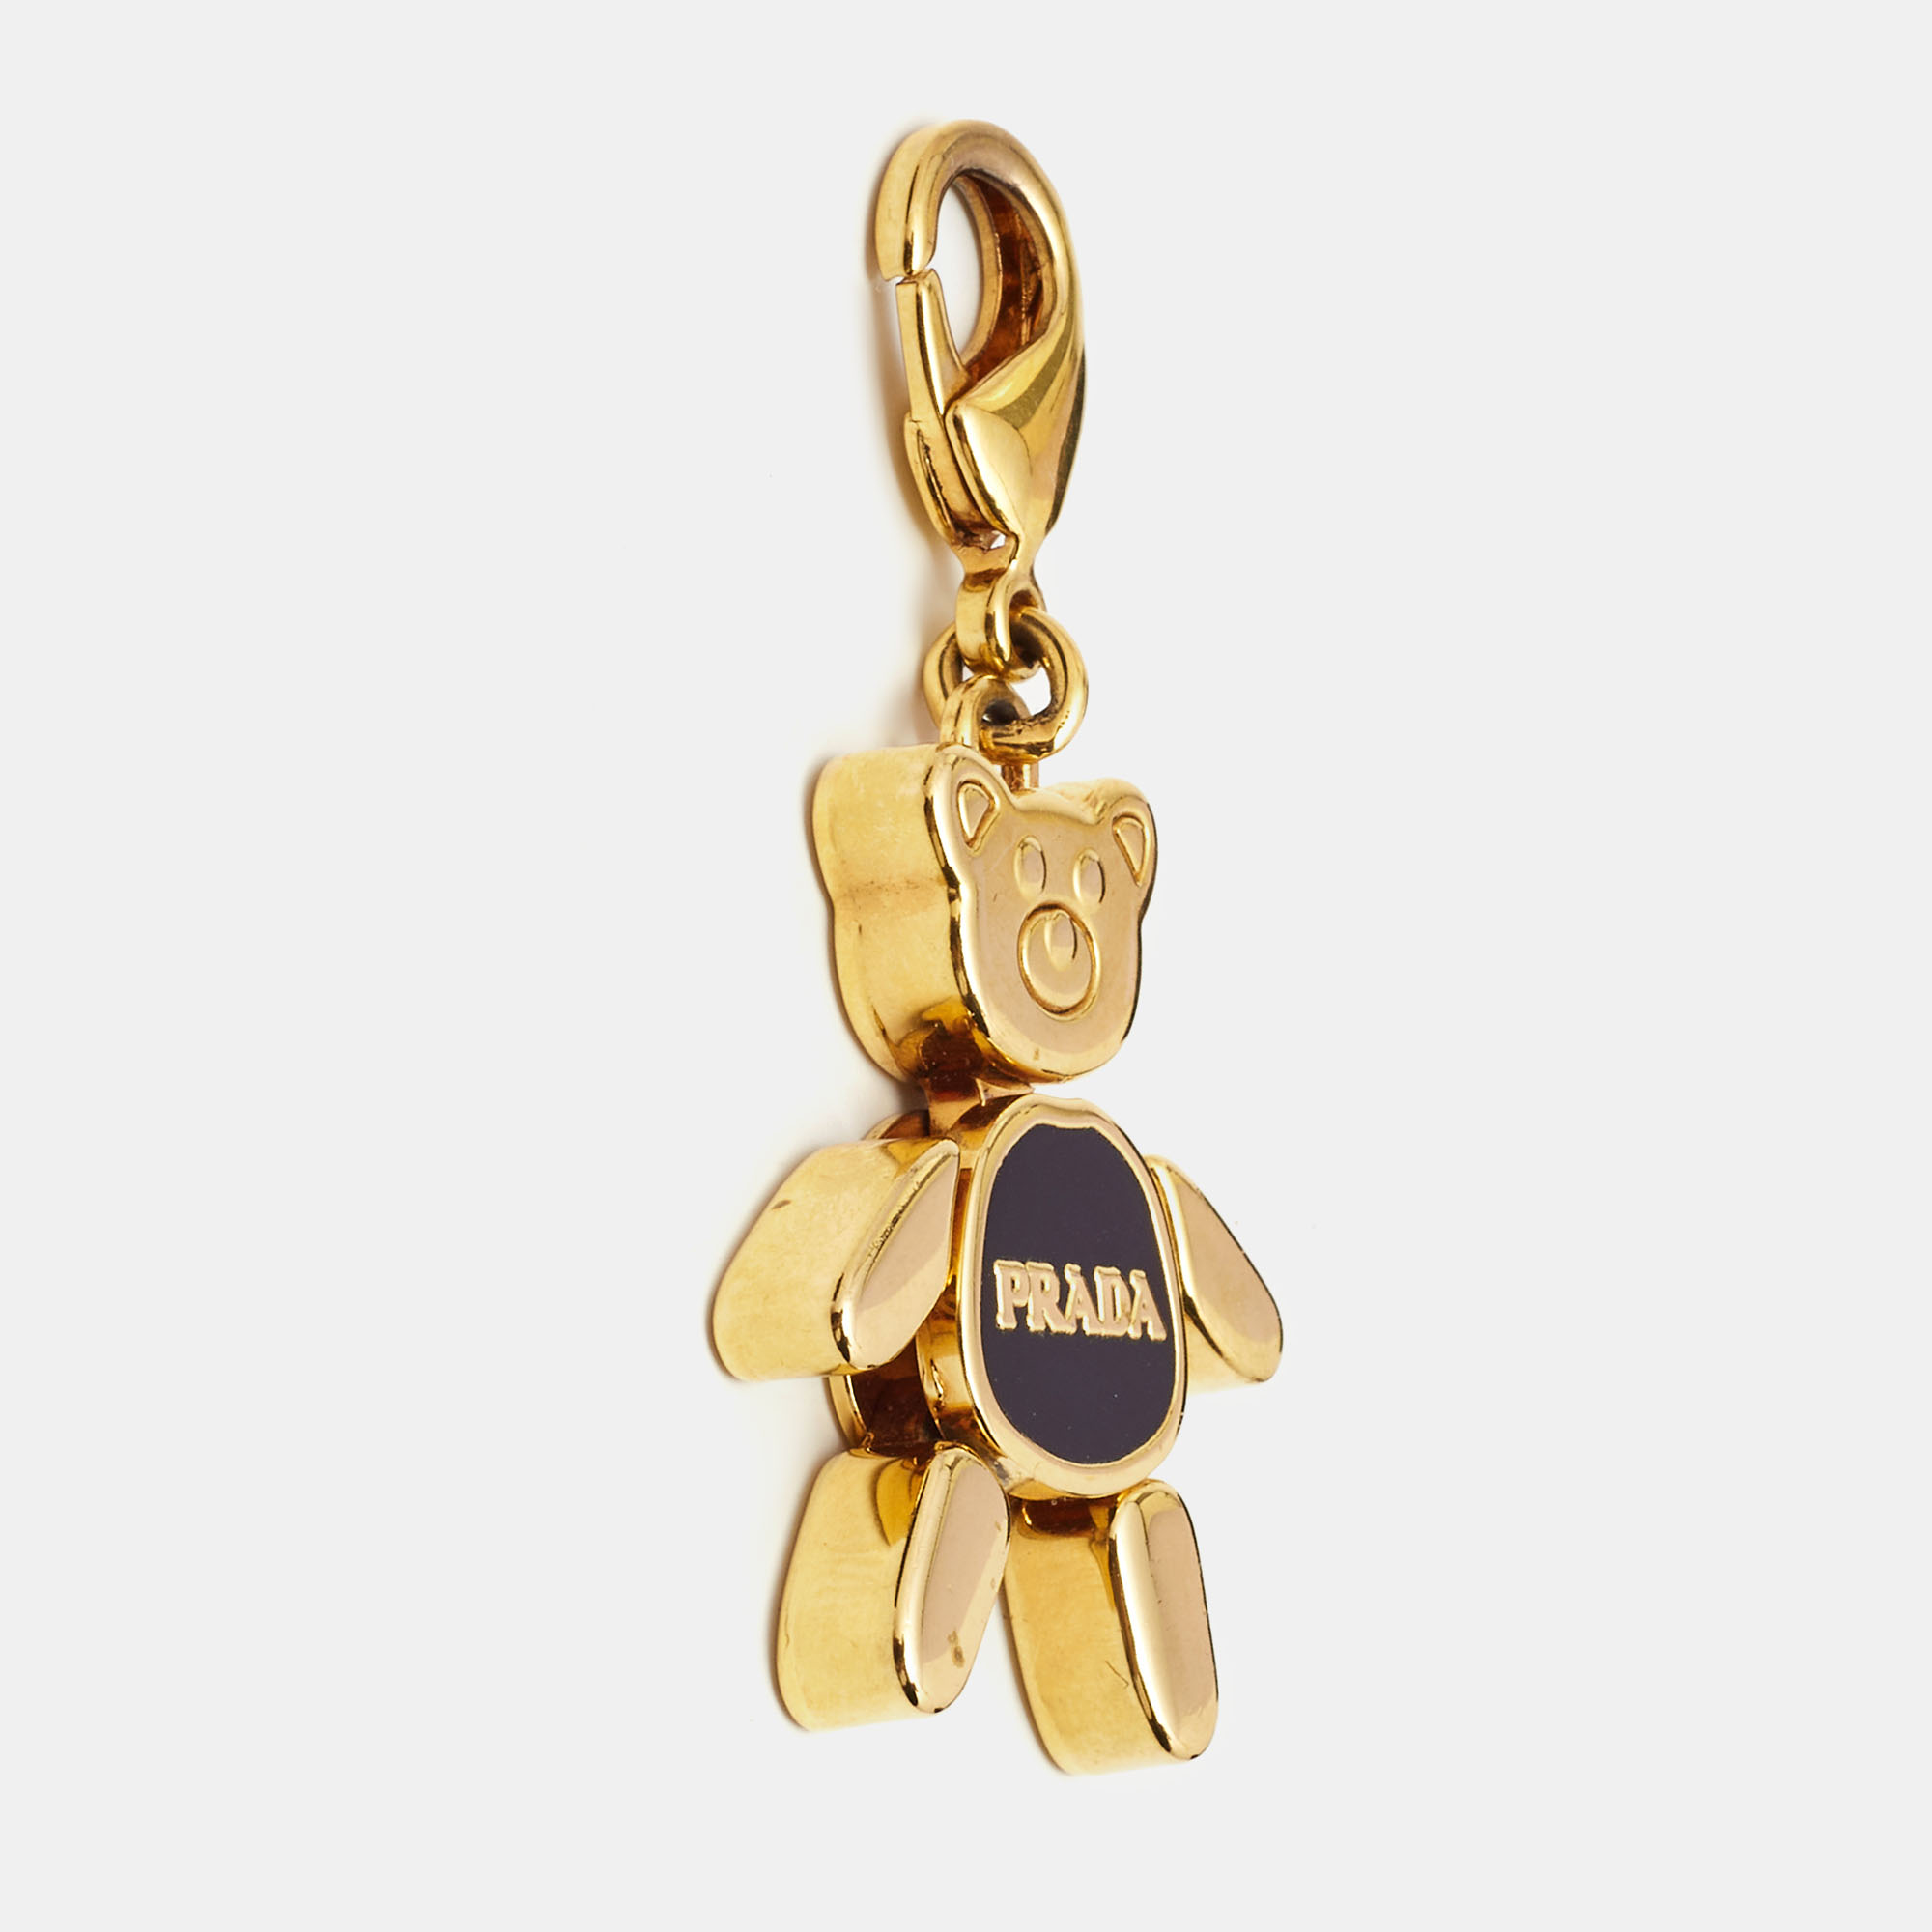 

Prada Black Enamel Gold Tone Teddy Bear Bag Charm